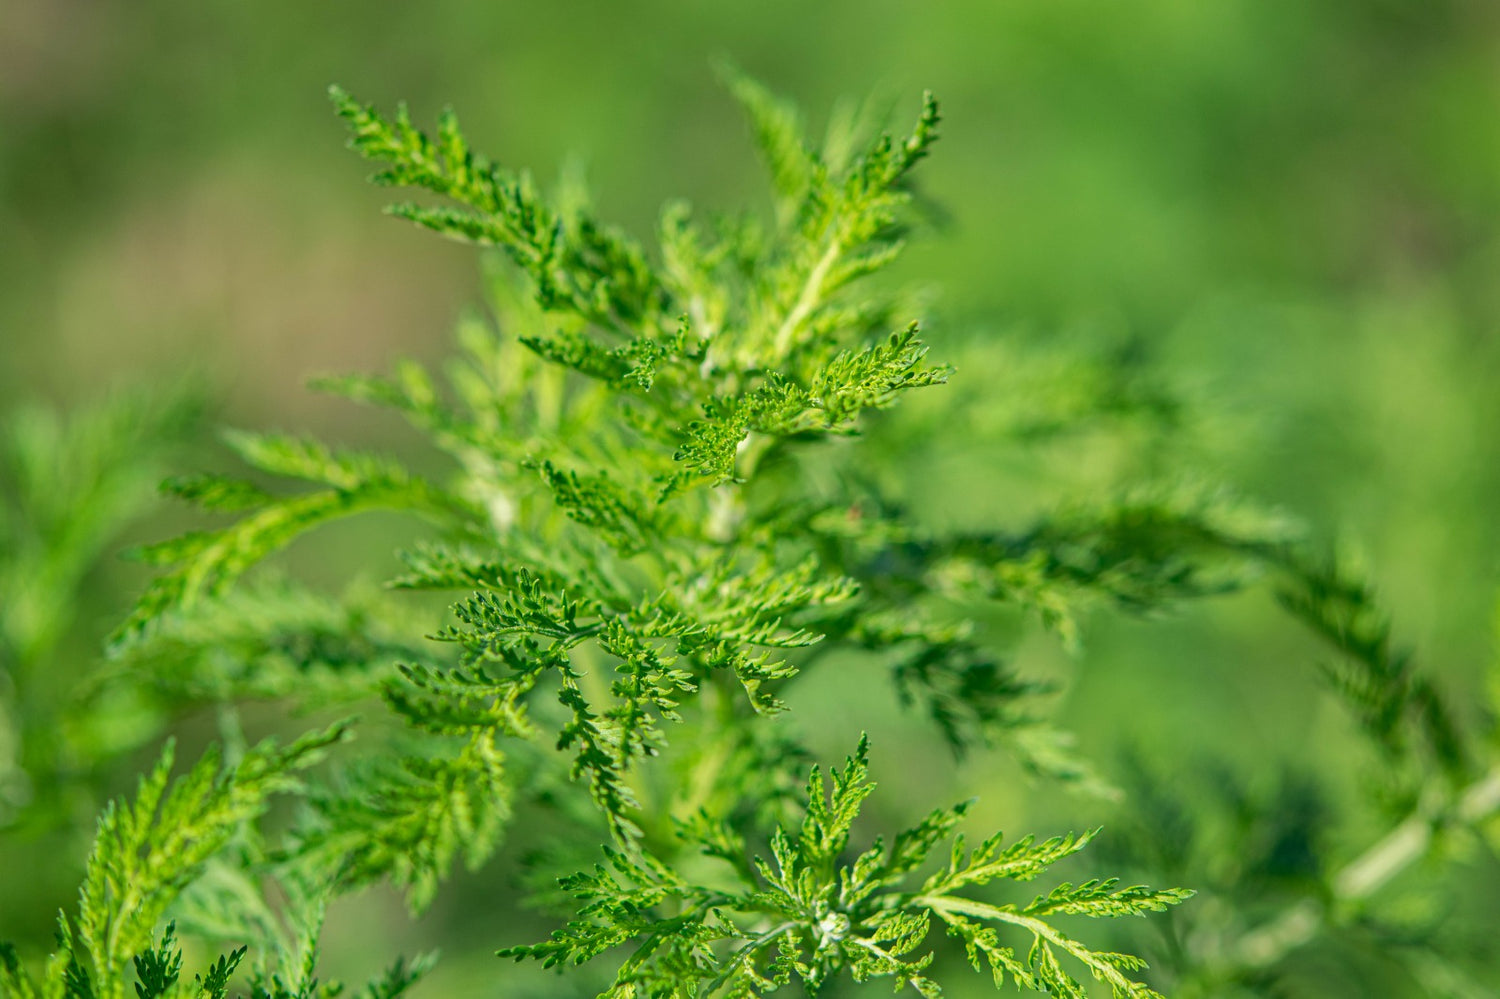 Artemisia Annua (ohne Blüten/August) - Forschung testete Pflanzen gegen Sars Cov 2 / Covid 19